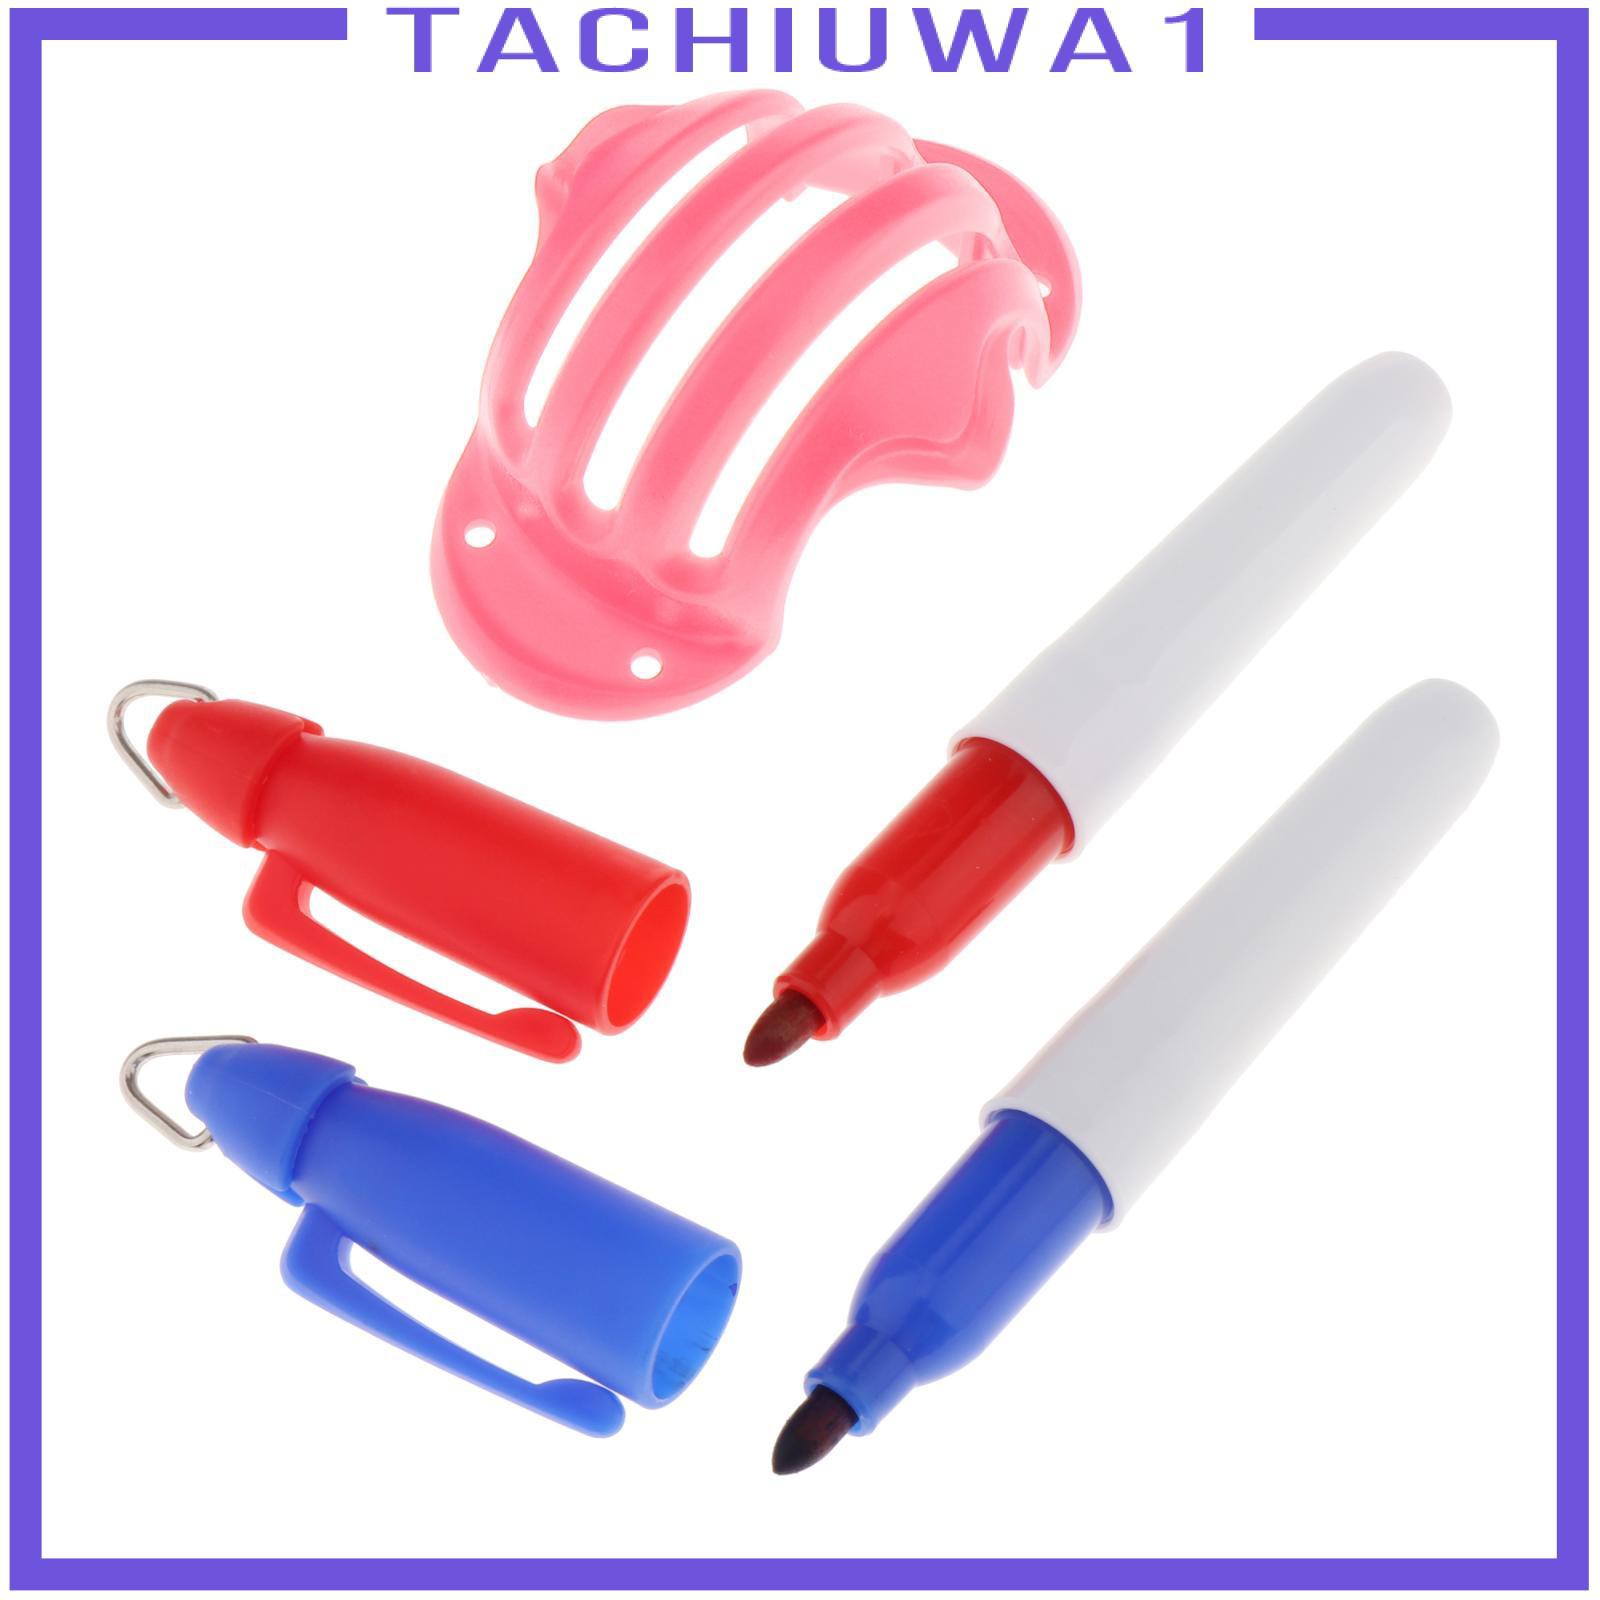 Bộ 3 Khuôn Vẽ Bóng Golf Tachiuwa1 Và 2 Bút Đánh Dấu Bóng Golf